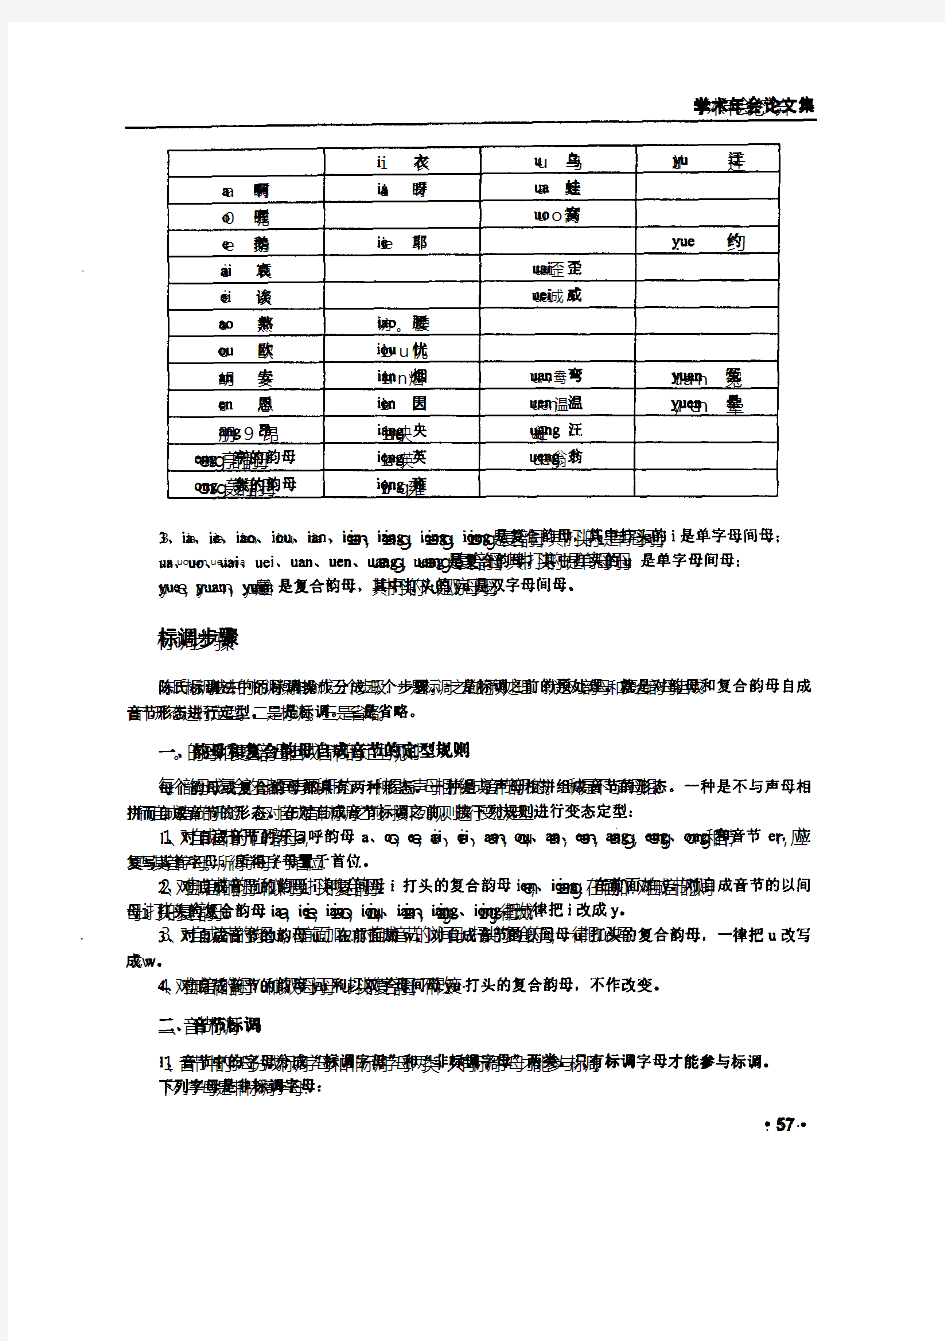 一种改进的汉语拼音方案和新的标调方法